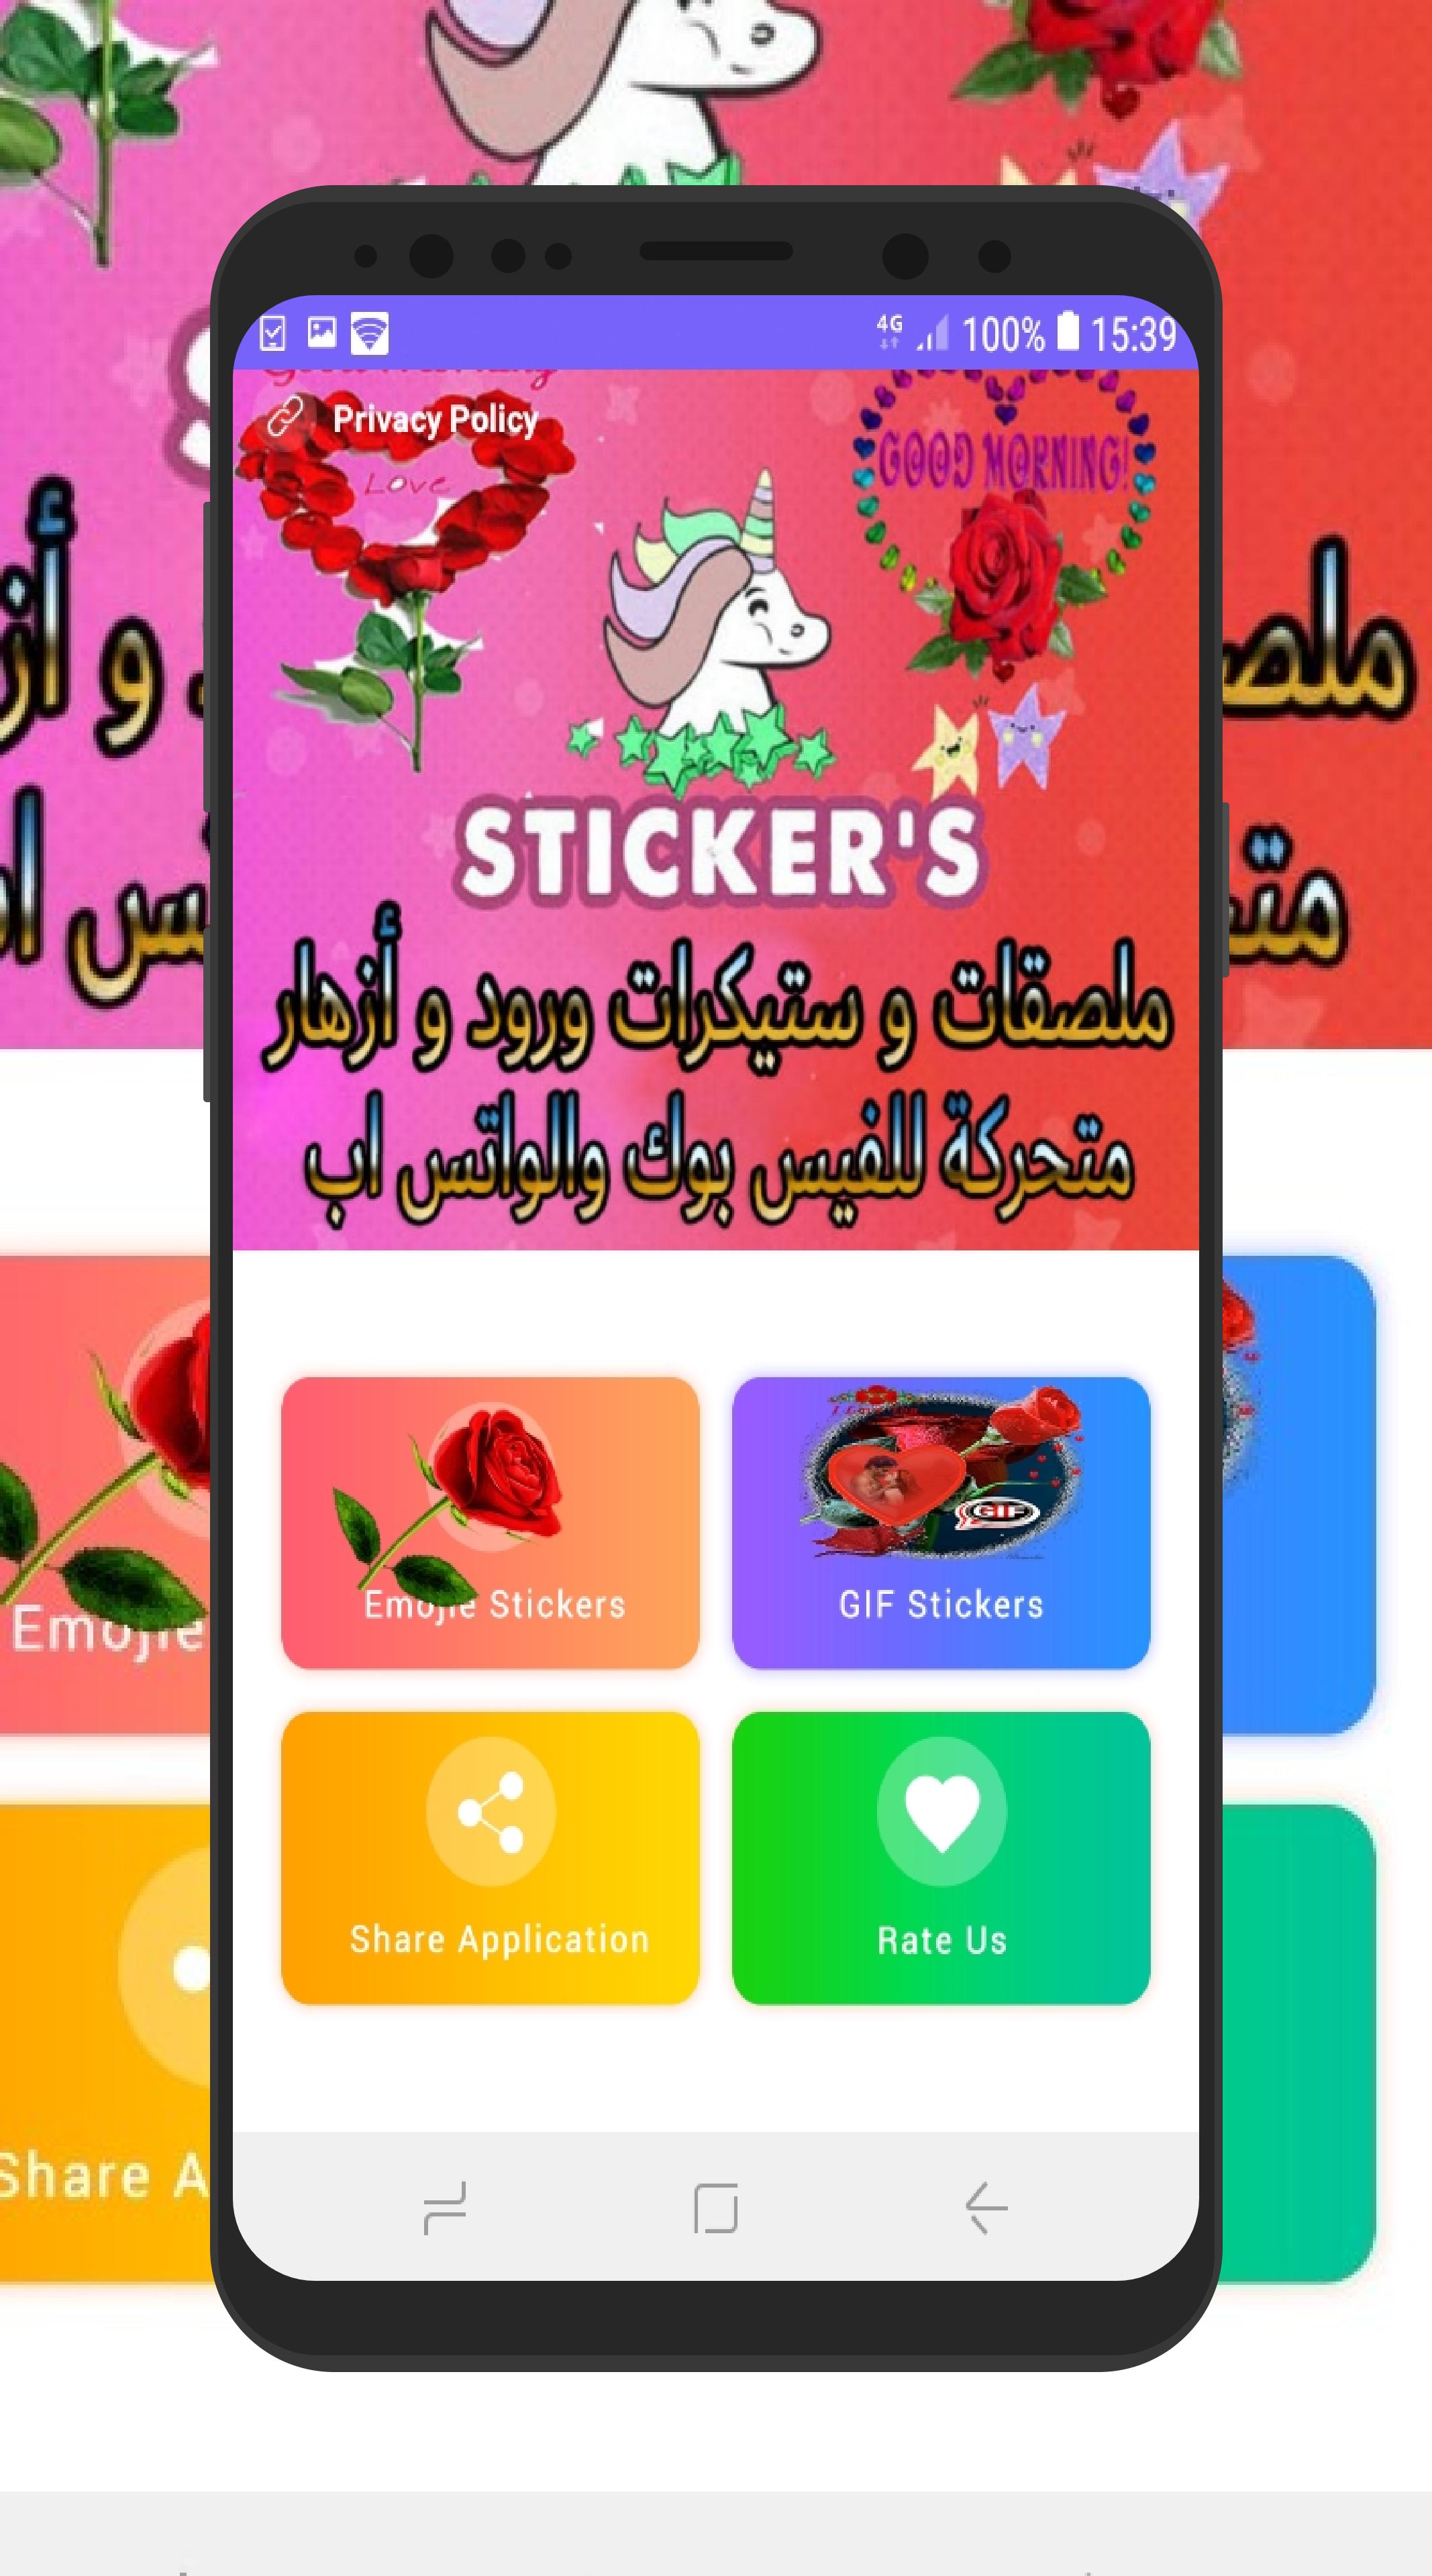 ملصقات ورود و أزهار متحركة للفيس بوك والواتس اب APK for Android Download